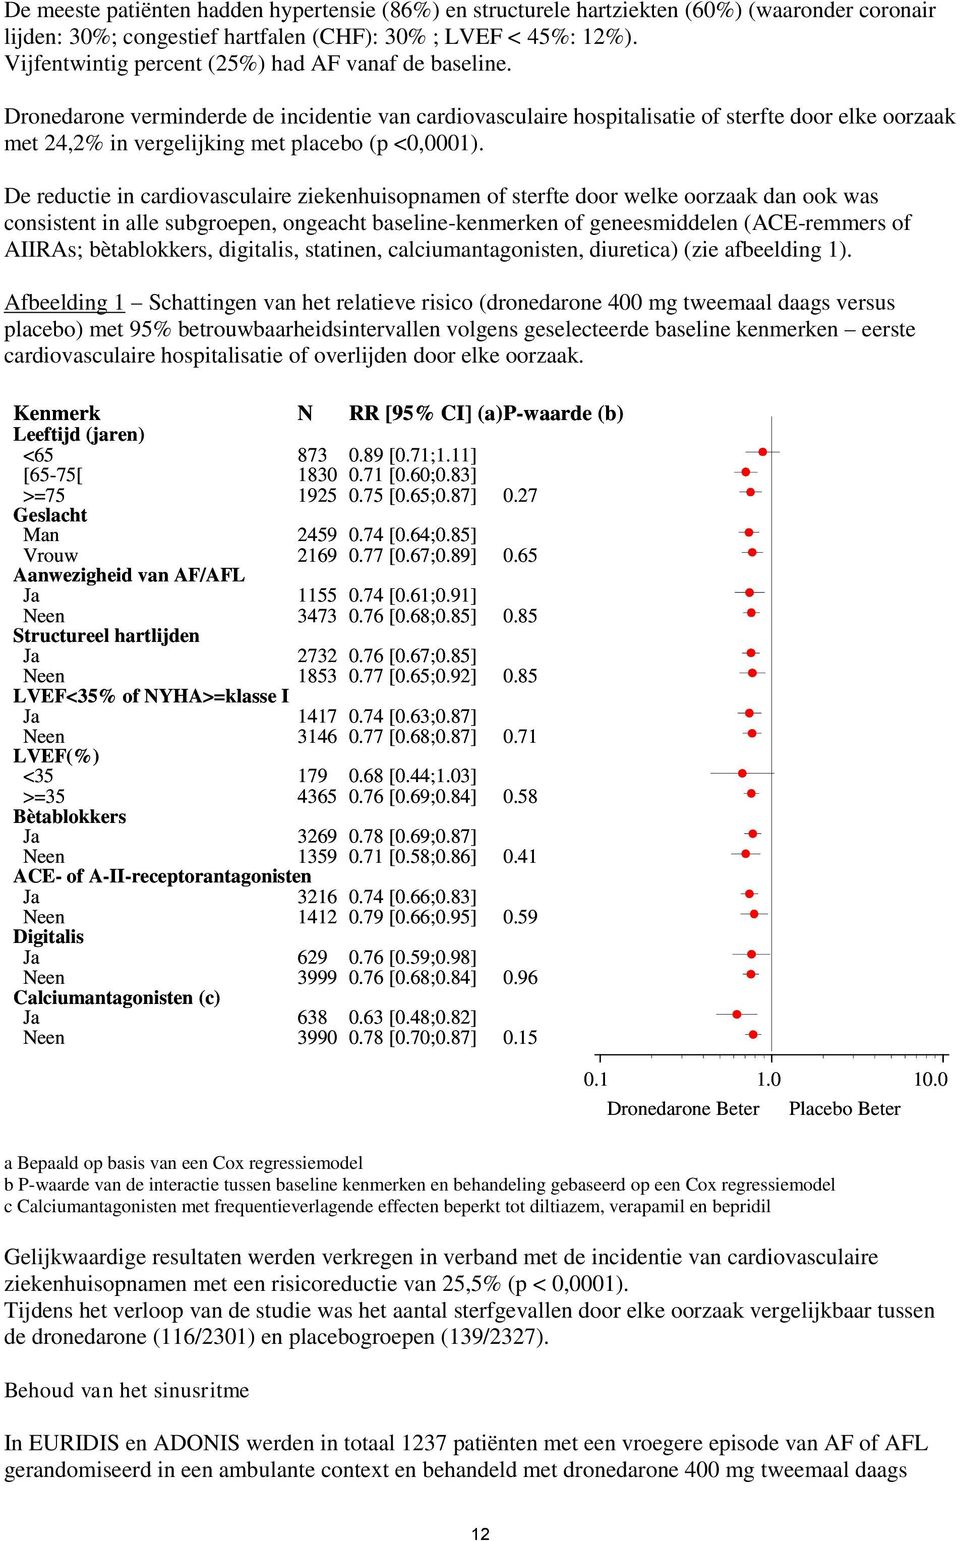 Dronedarone verminderde de incidentie van cardiovasculaire hospitalisatie of sterfte door elke oorzaak met 24,2% in vergelijking met placebo (p <0,0001).